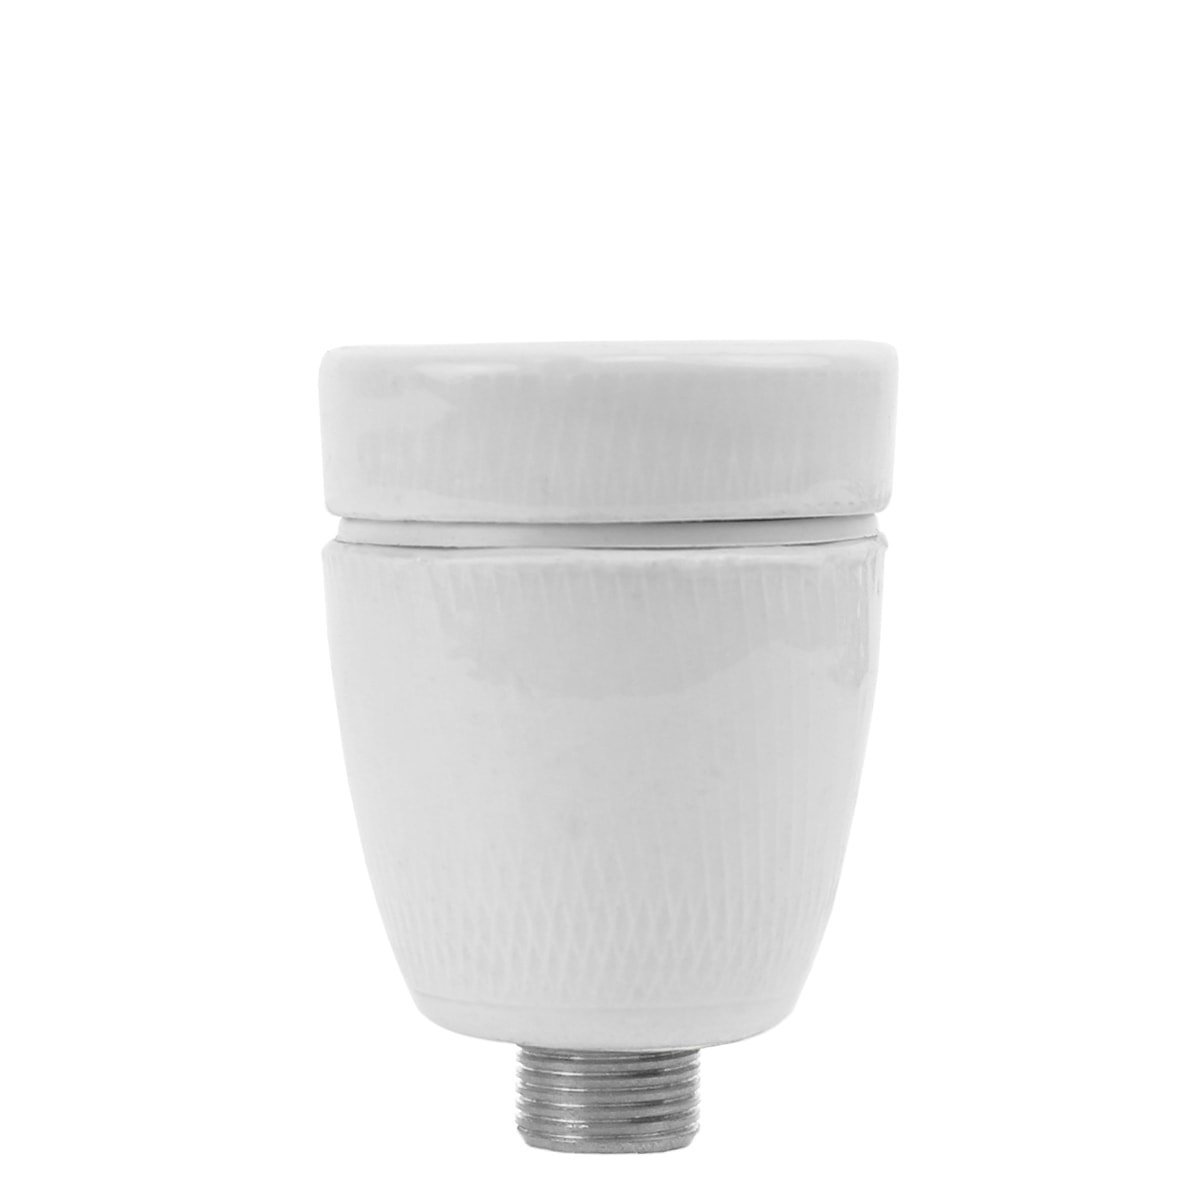 Outdoor lighting Classic Rural Losse porcelain lamp holder E27 - Ø 10 mm